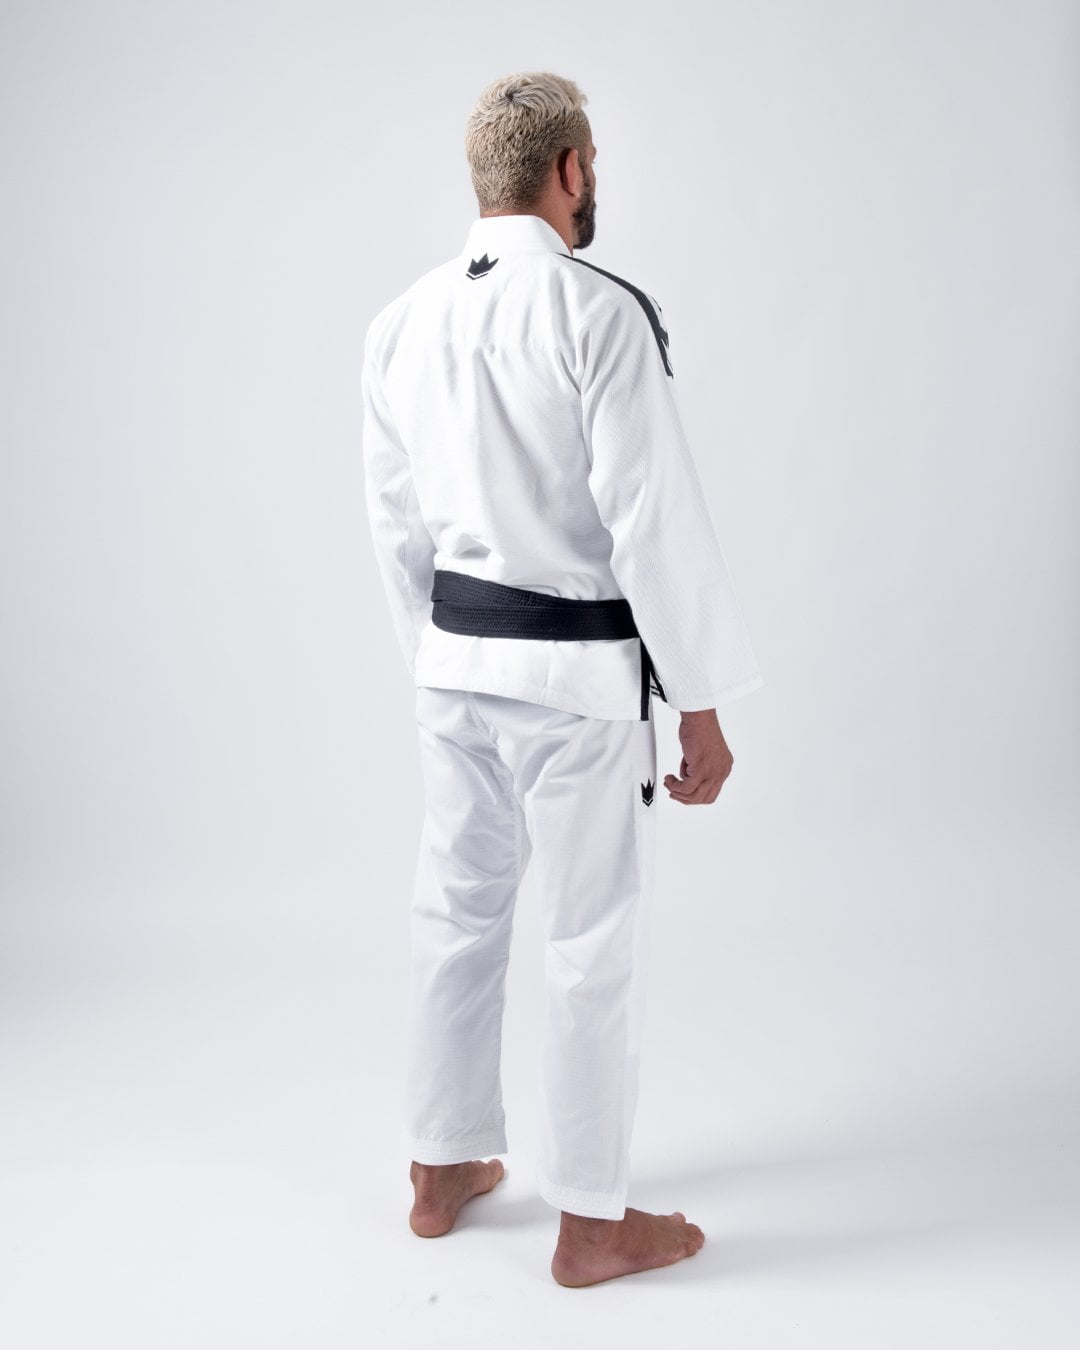 RDX Sports Brazilian Jiu-Jitsu Kimono White